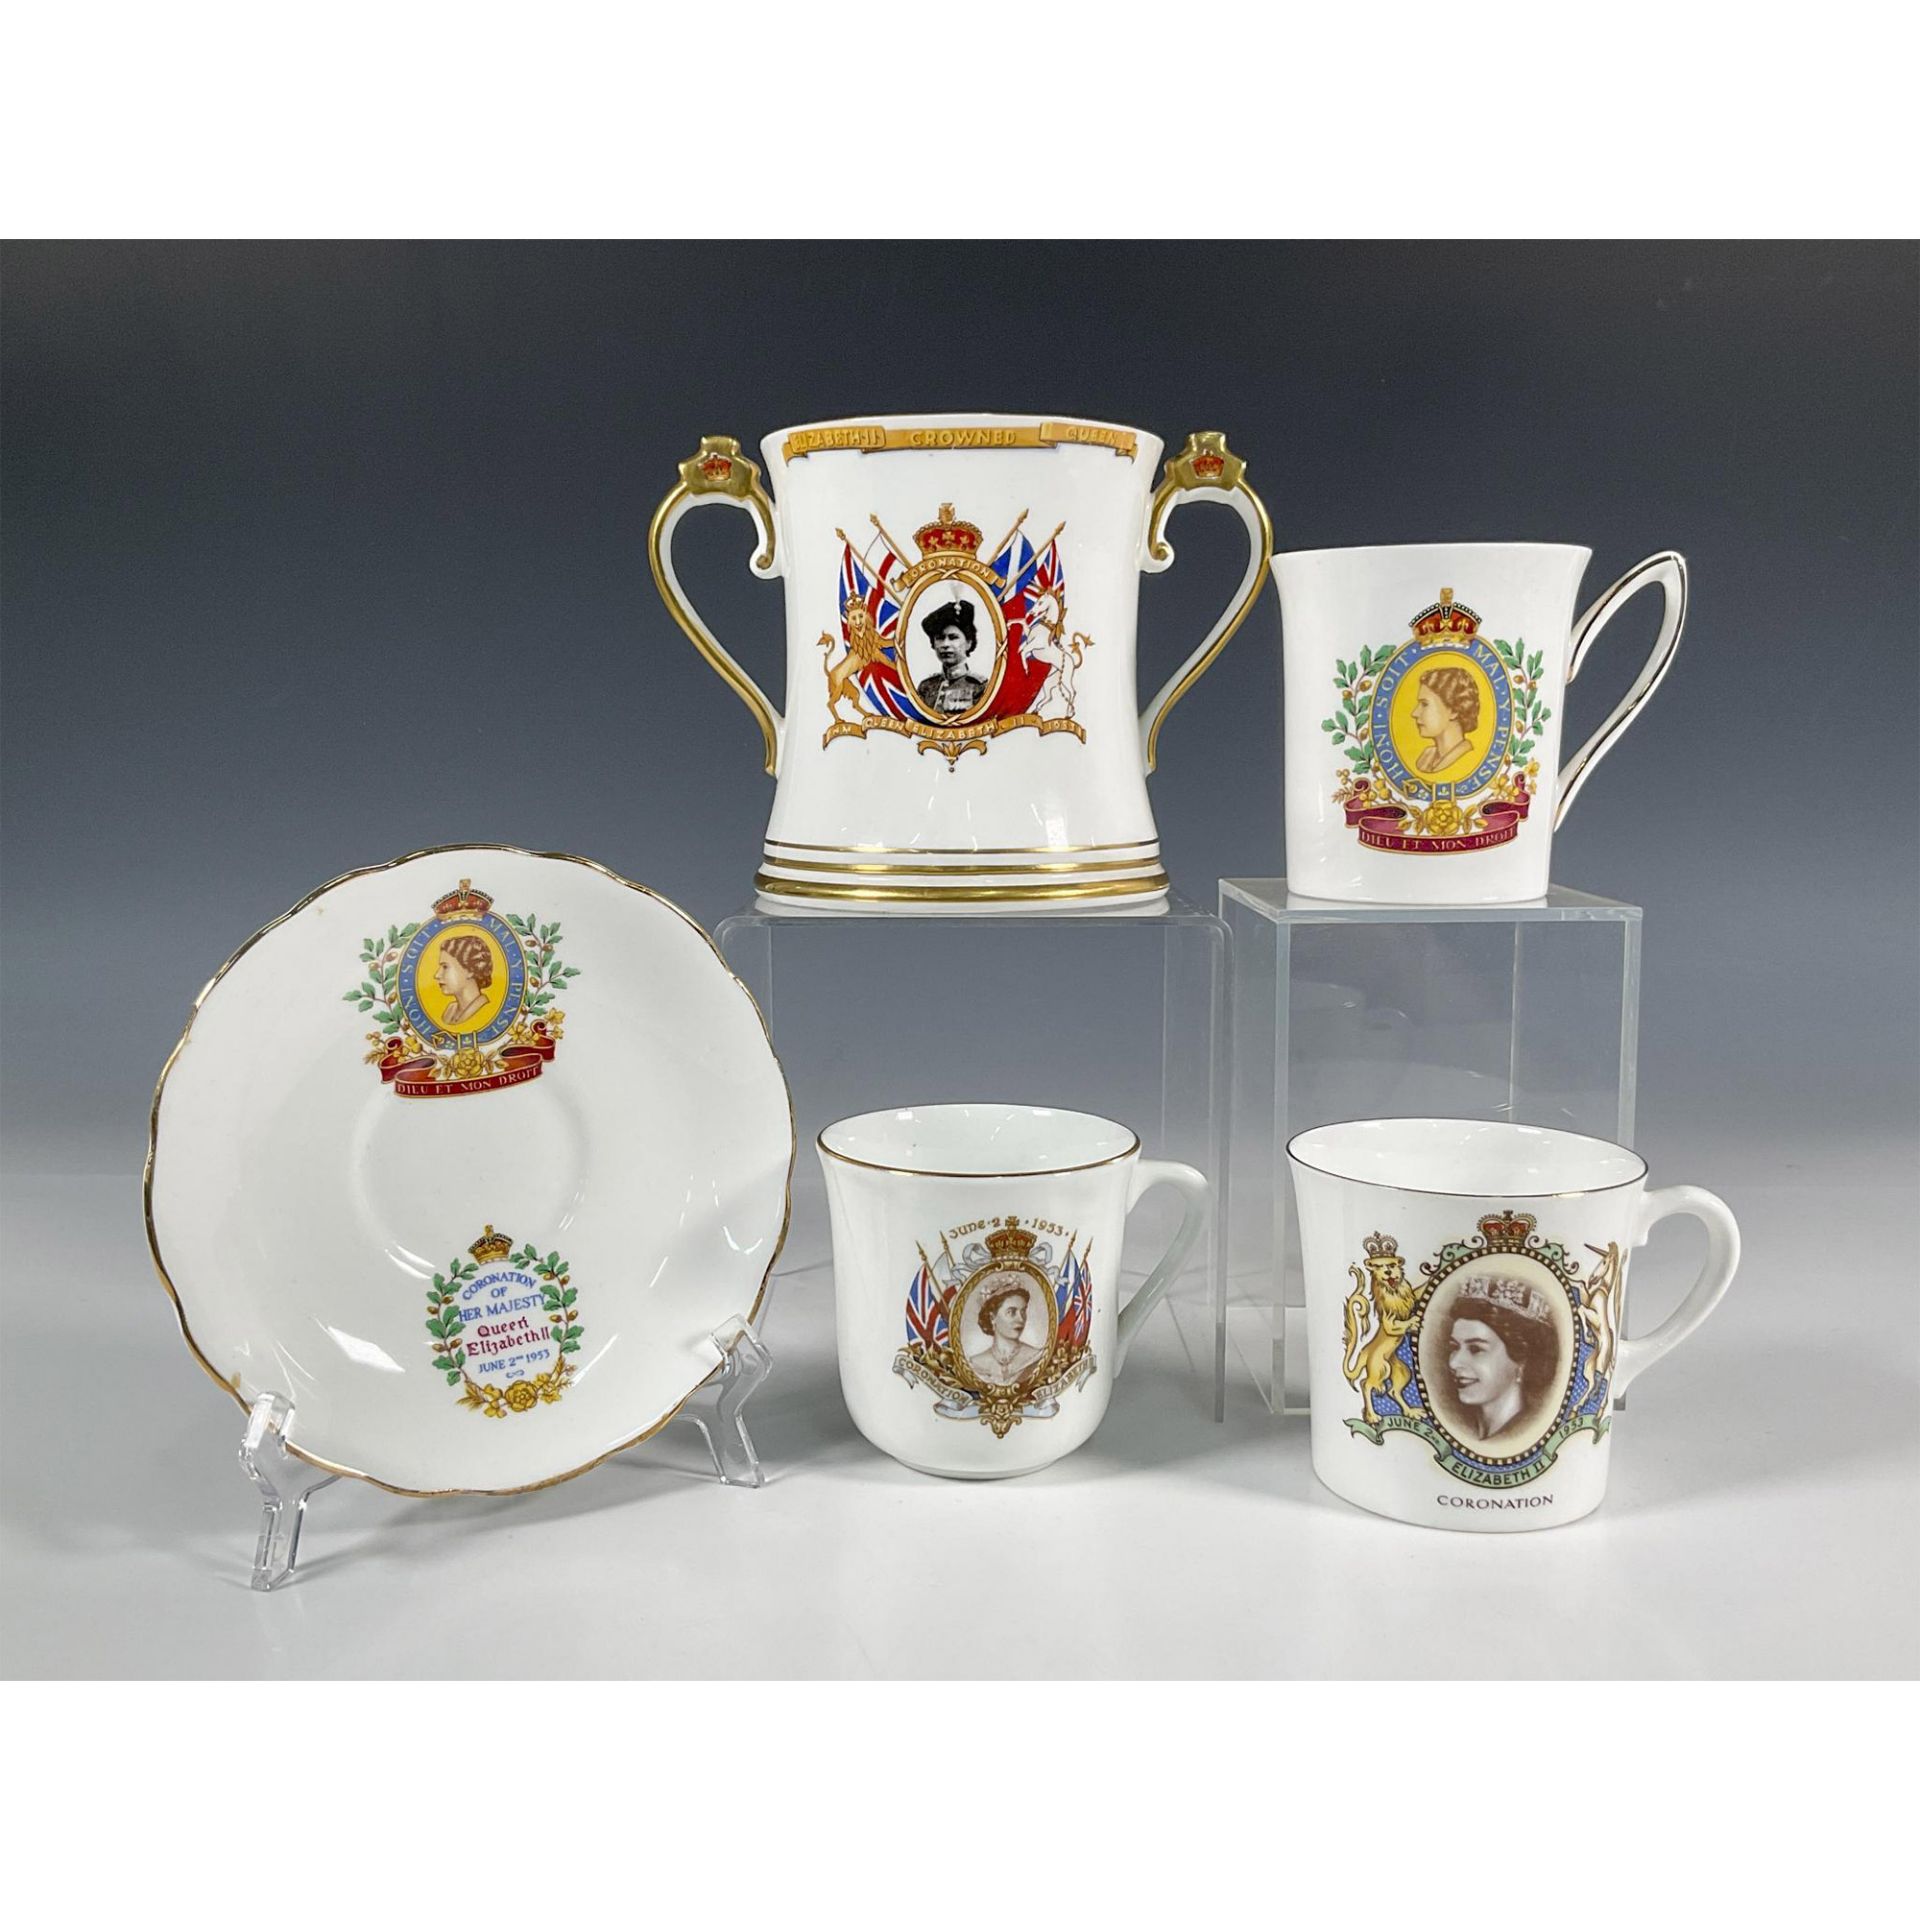 5pc Royal Commemorative Cups, Queen Elizabeth II